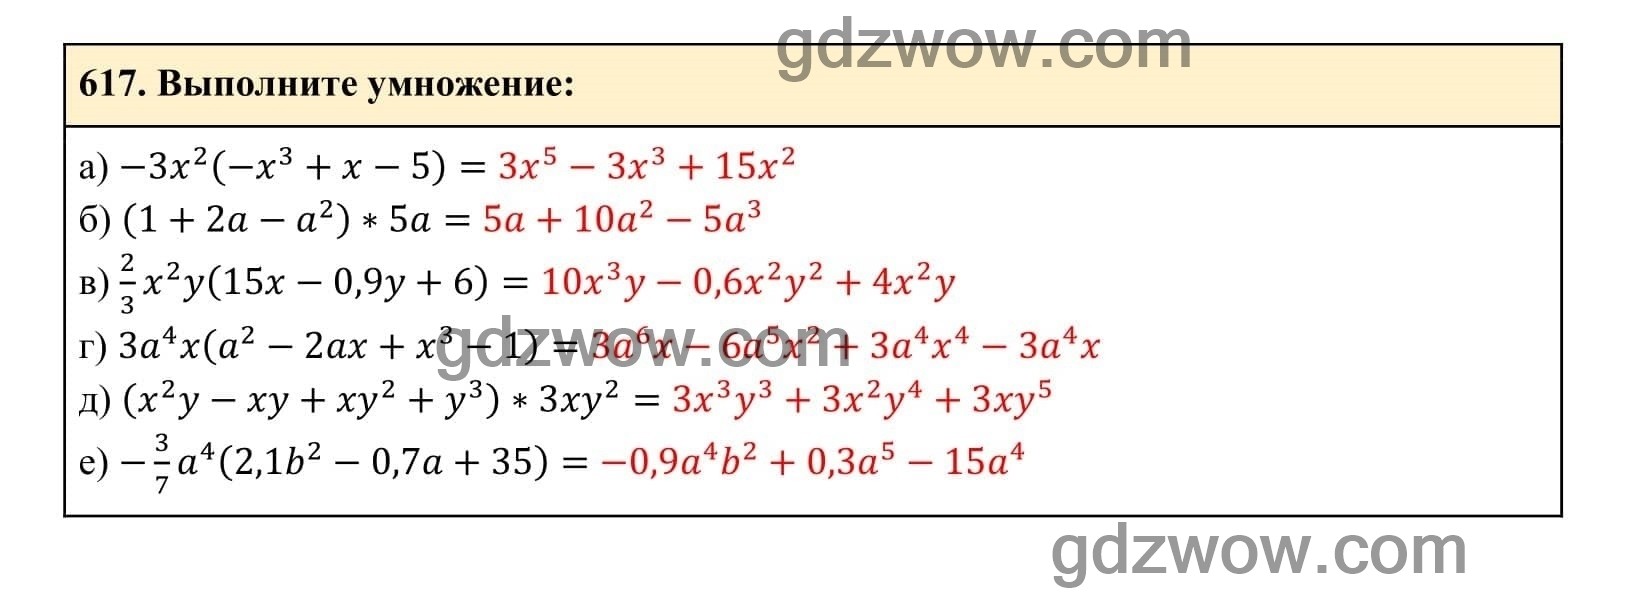 Упражнение 617 - ГДЗ по Алгебре 7 класс Учебник Макарычев (решебник) - GDZwow